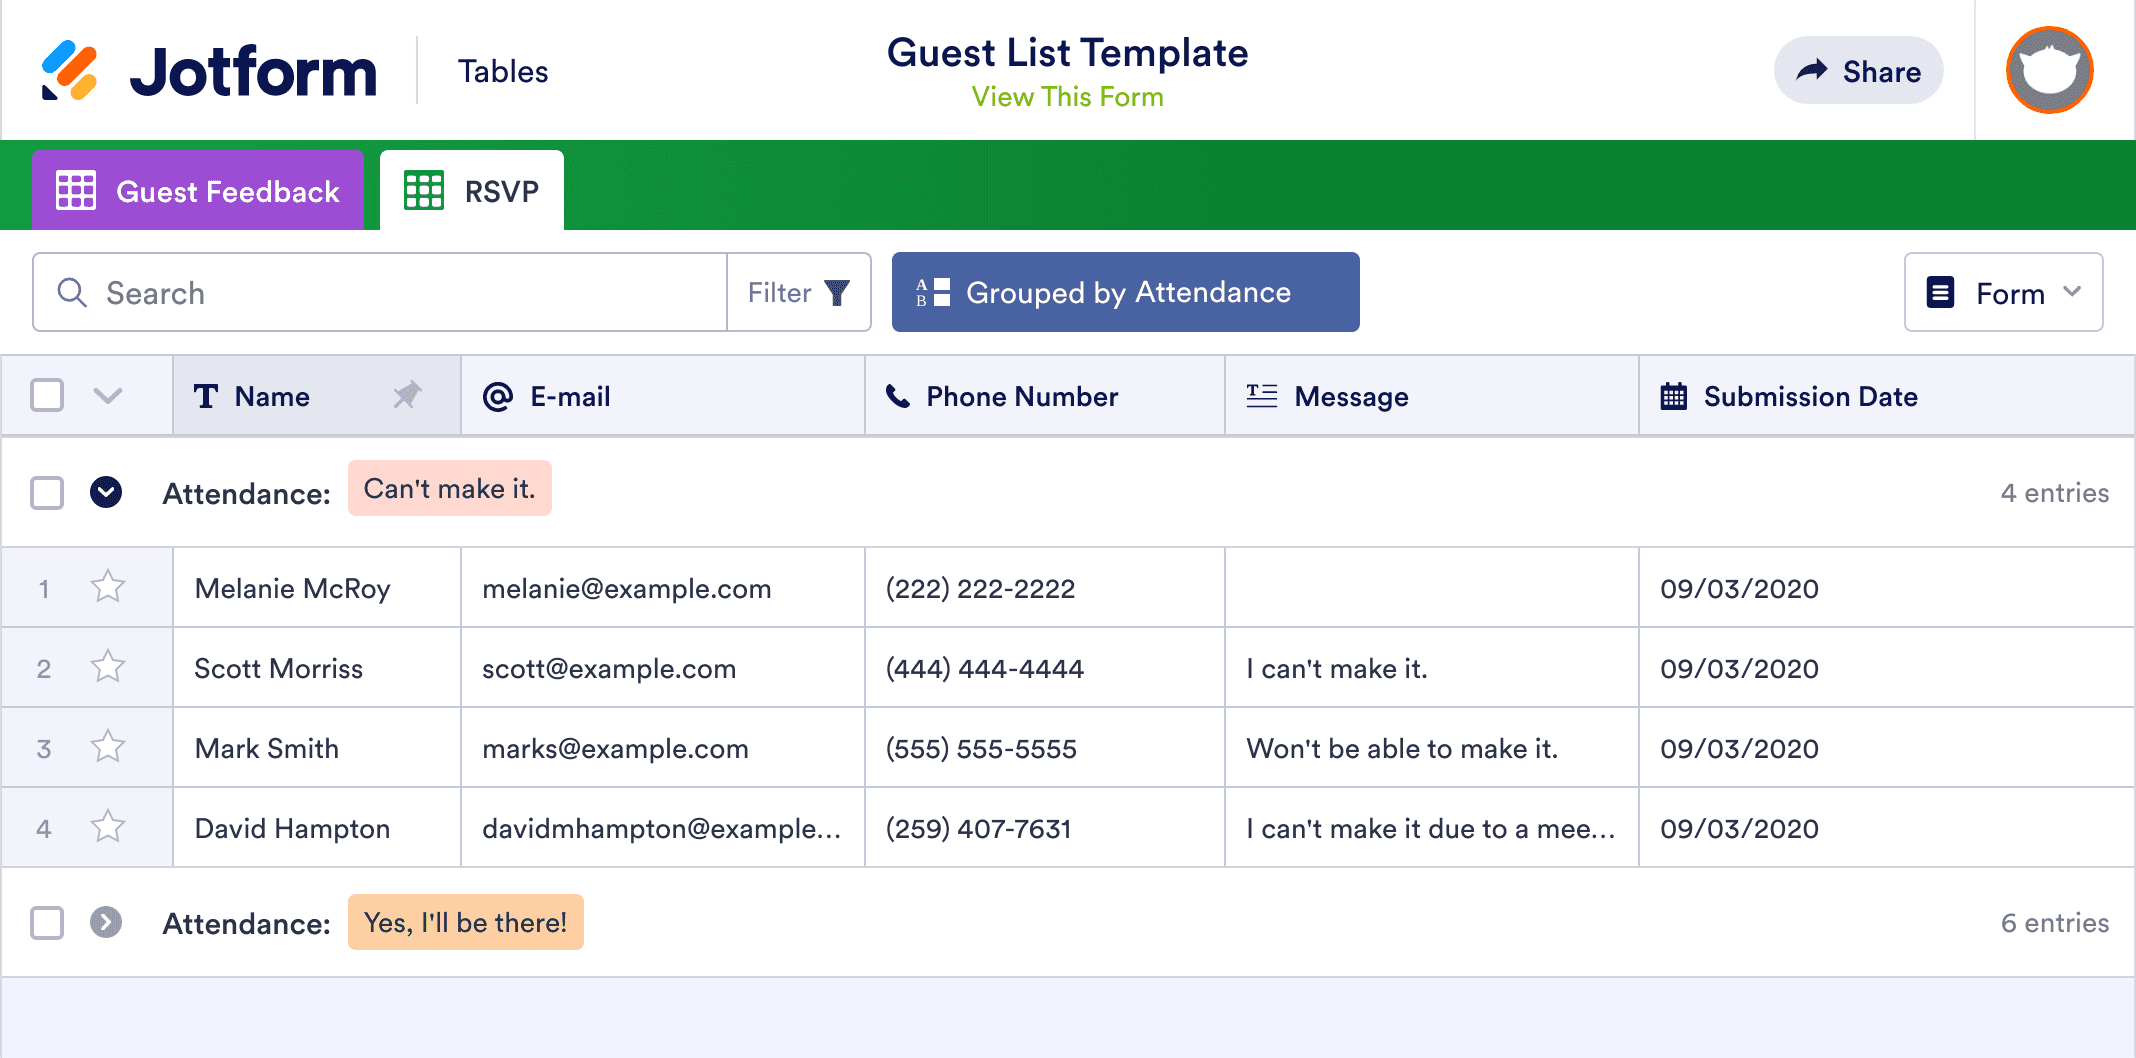 Guest List Template